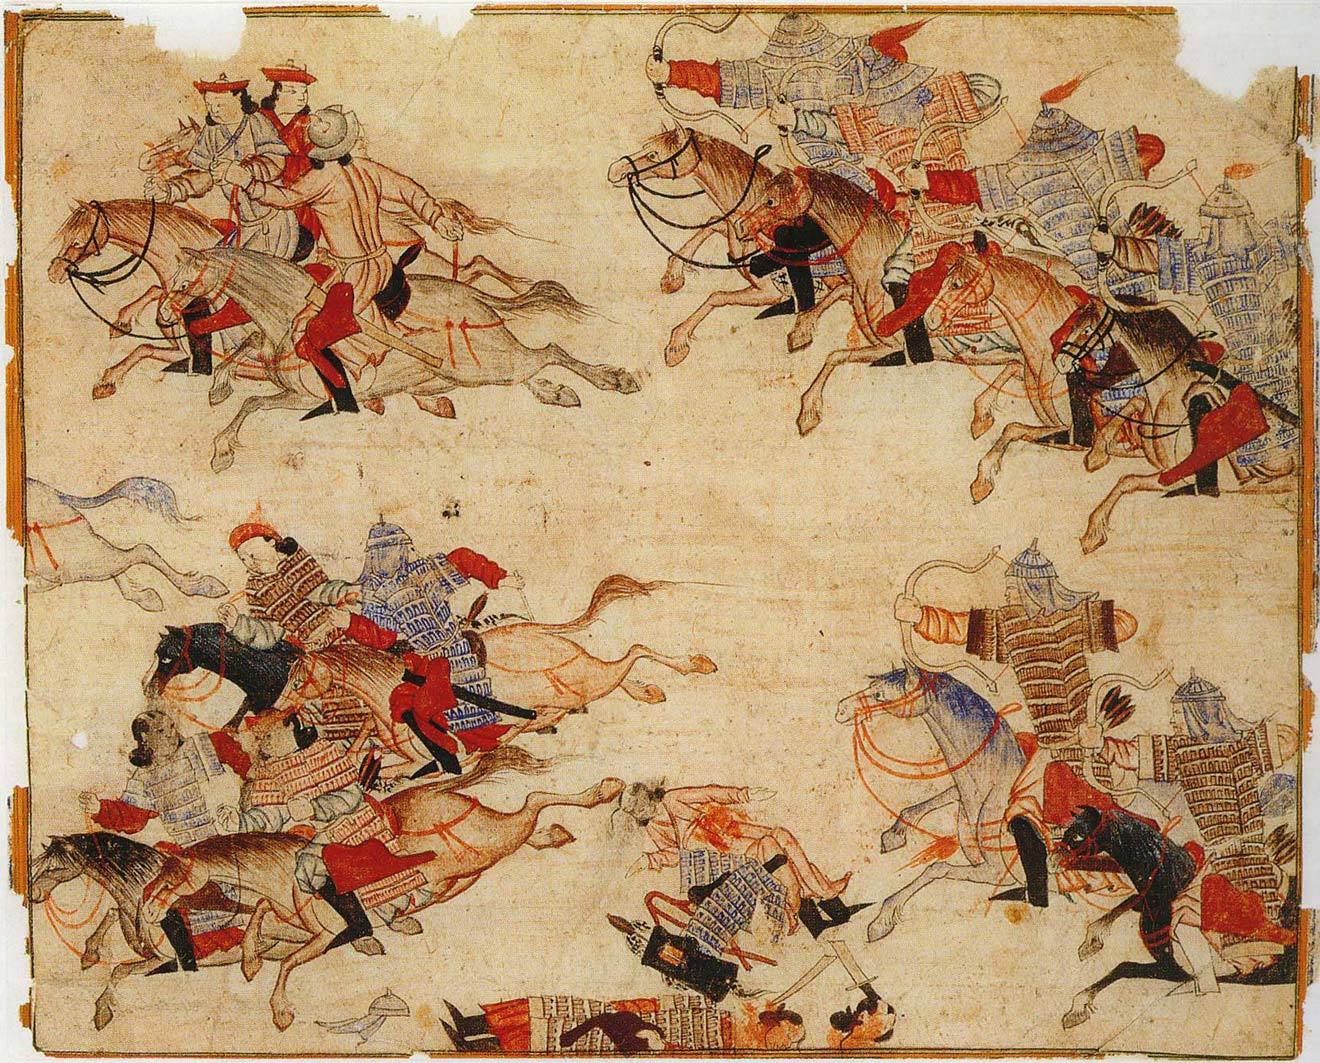 Контрольная работа по теме Борьба за великое княжение в период монголо-татарского ига